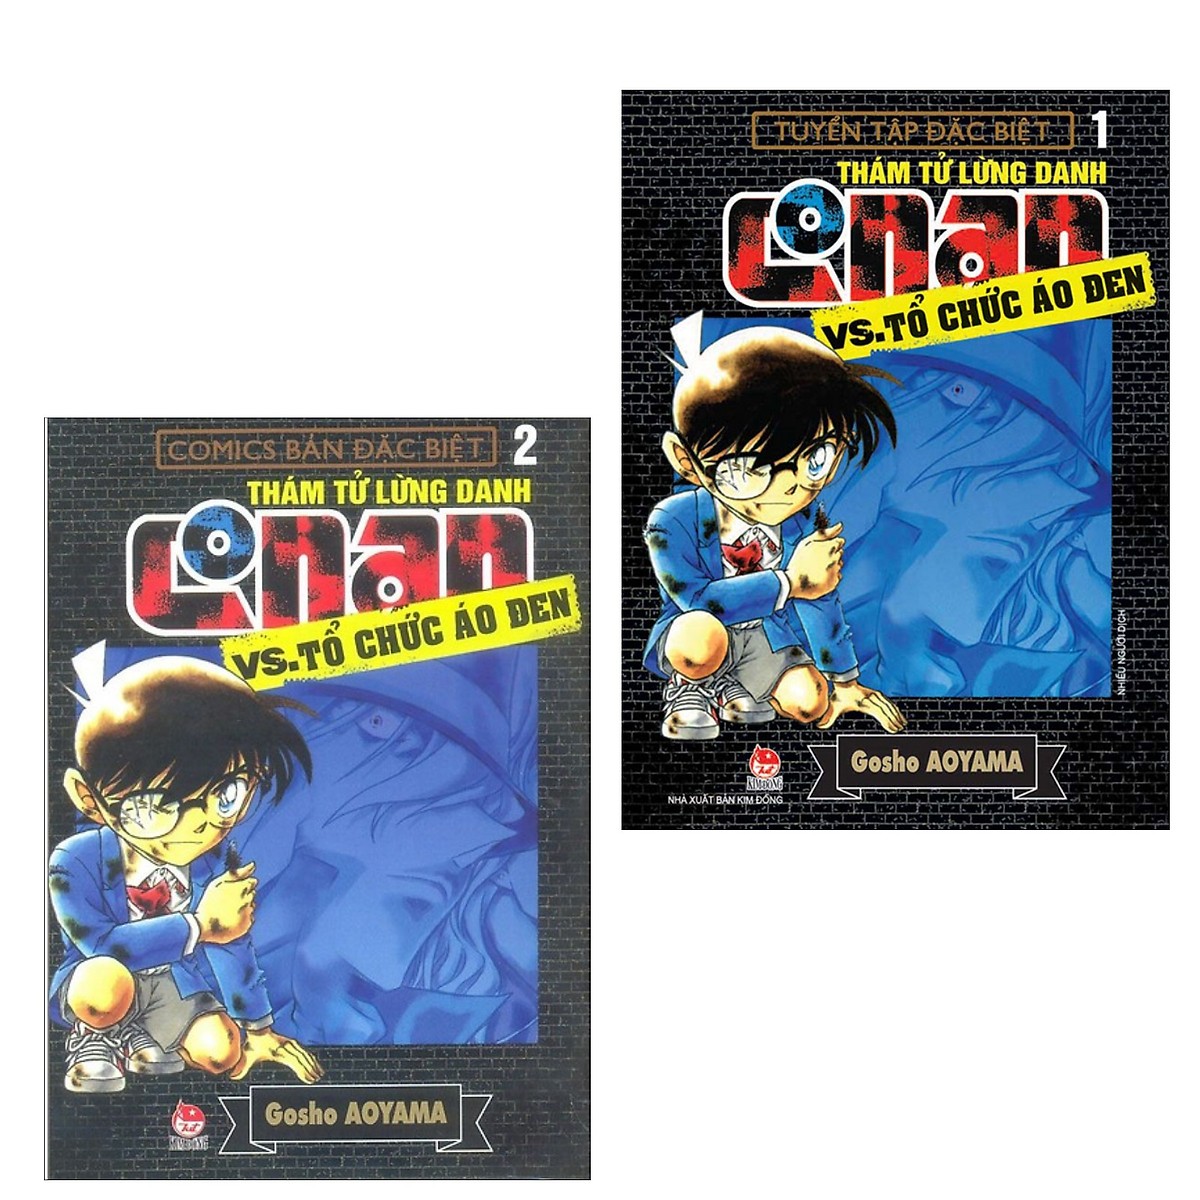 Combo Trọn Bộ Conan Đặc Sắc: Conan Và Tổ Chức Áo Đen (Tập 1, 2) + Conan Tuyển Tập Đặc Biệt - FBI Selection + Conan Tuyển Tập Fan Bình Chọn (Tập 1, 2) + Conan Những Câu Chuyện Lãng Mạn (Tập 1,2,3) - Bộ 8 Cuốn